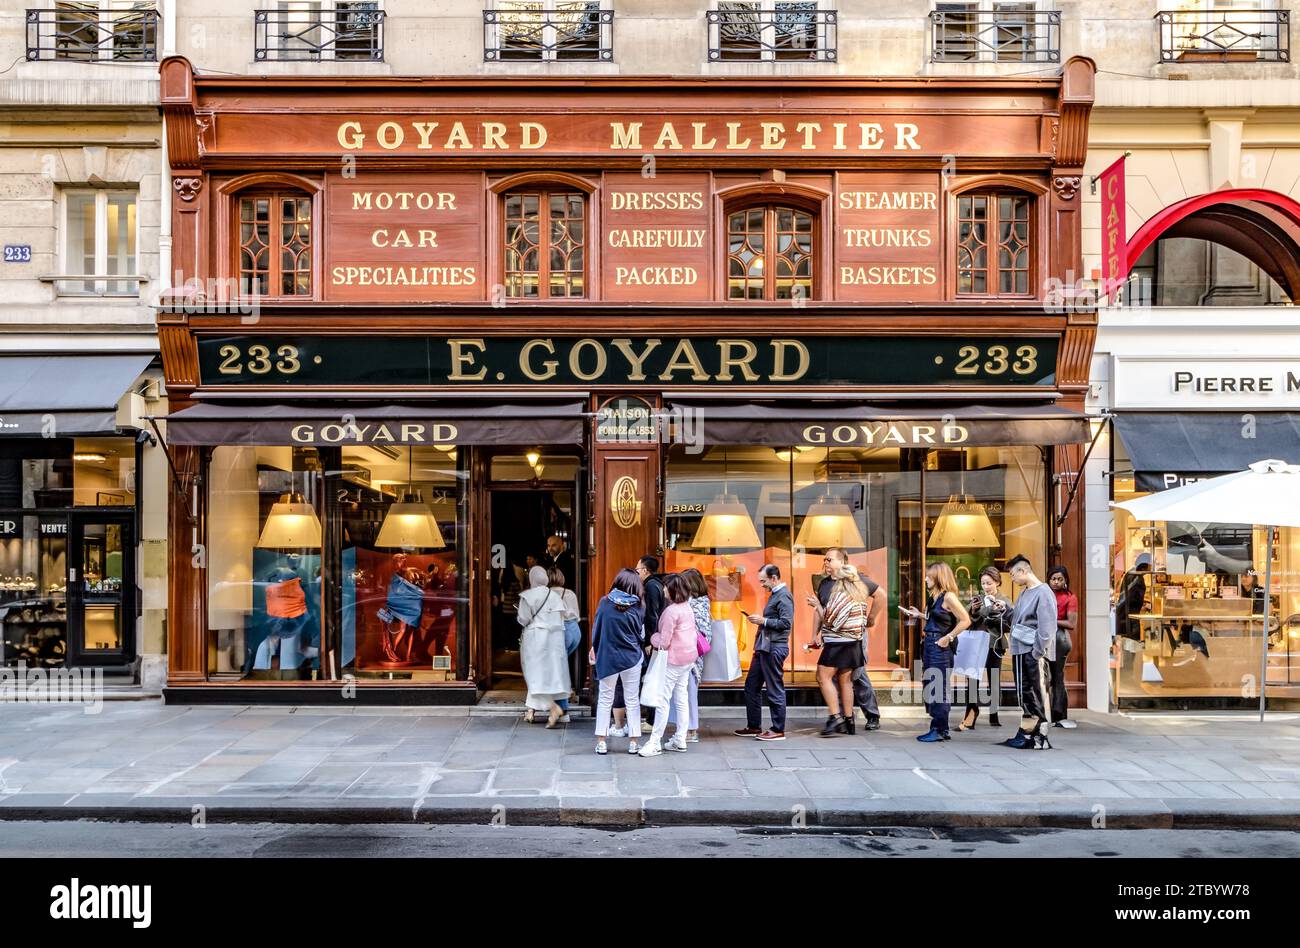 Les gens font la queue pour entrer dans la Maison Goyard, un magasin de maroquinerie de luxe rue Saint Honoré, Paris, France Banque D'Images